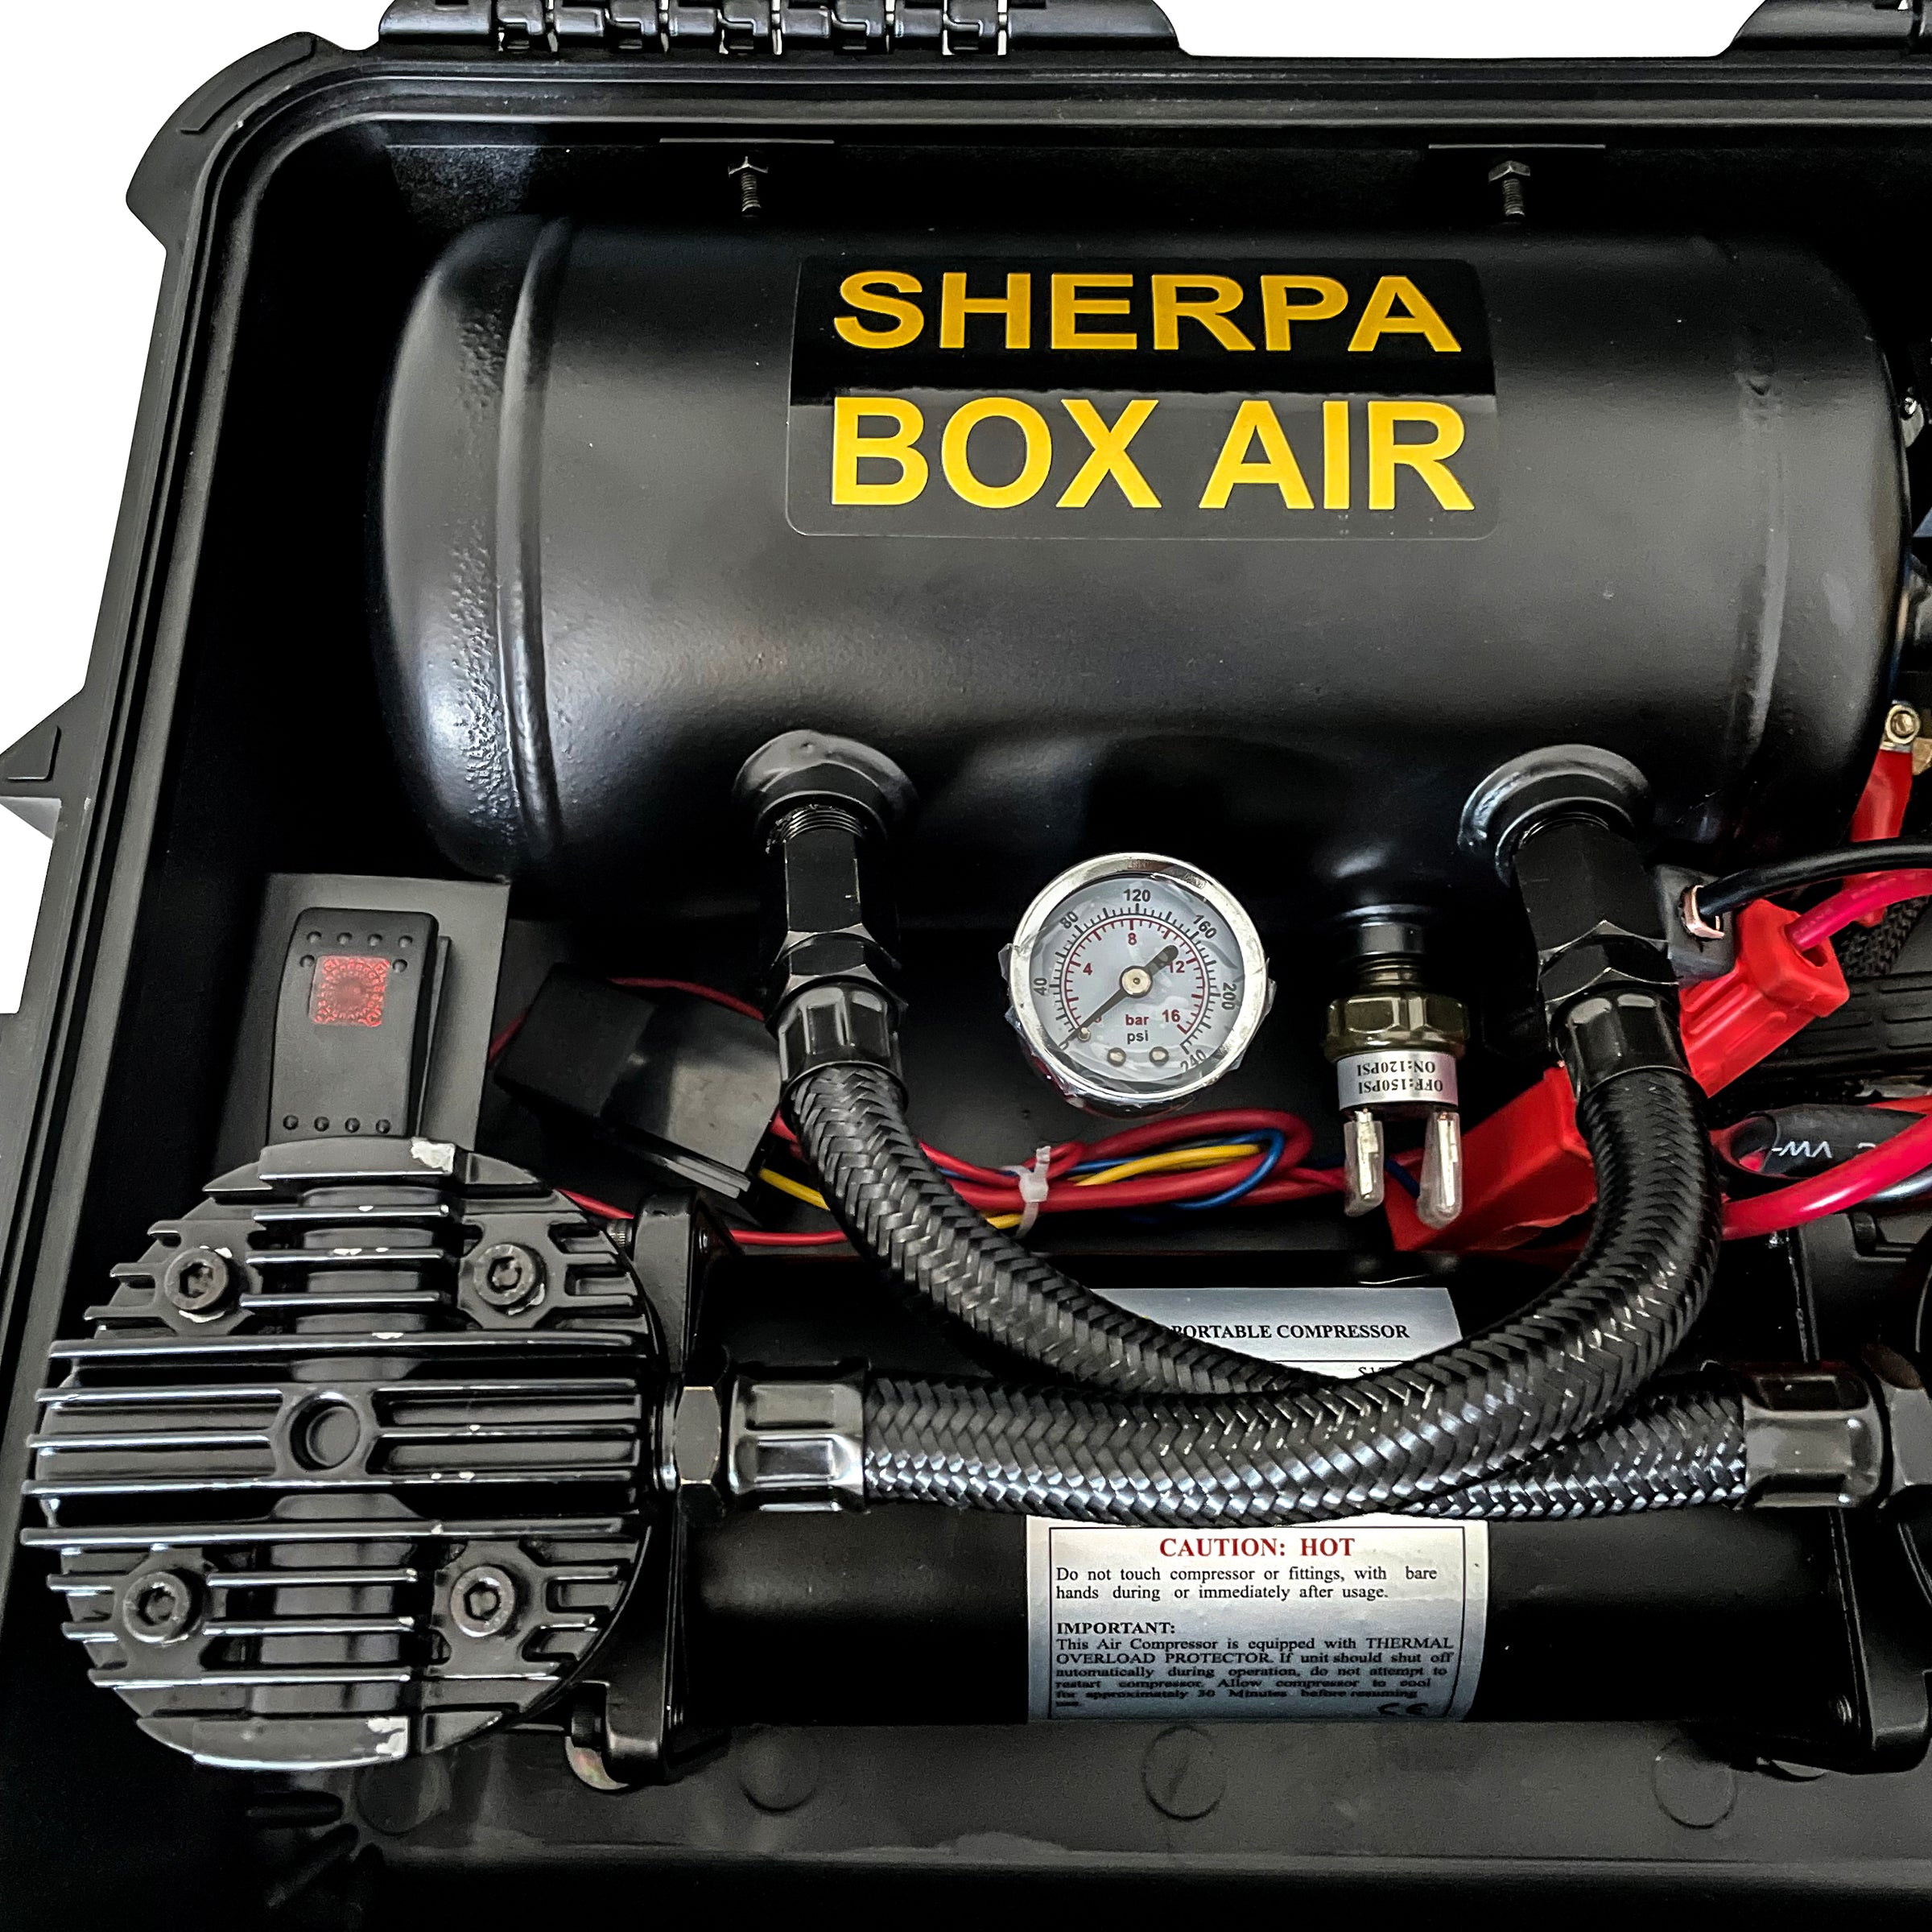 Sherpa Air Compressor (BOX-AIR)